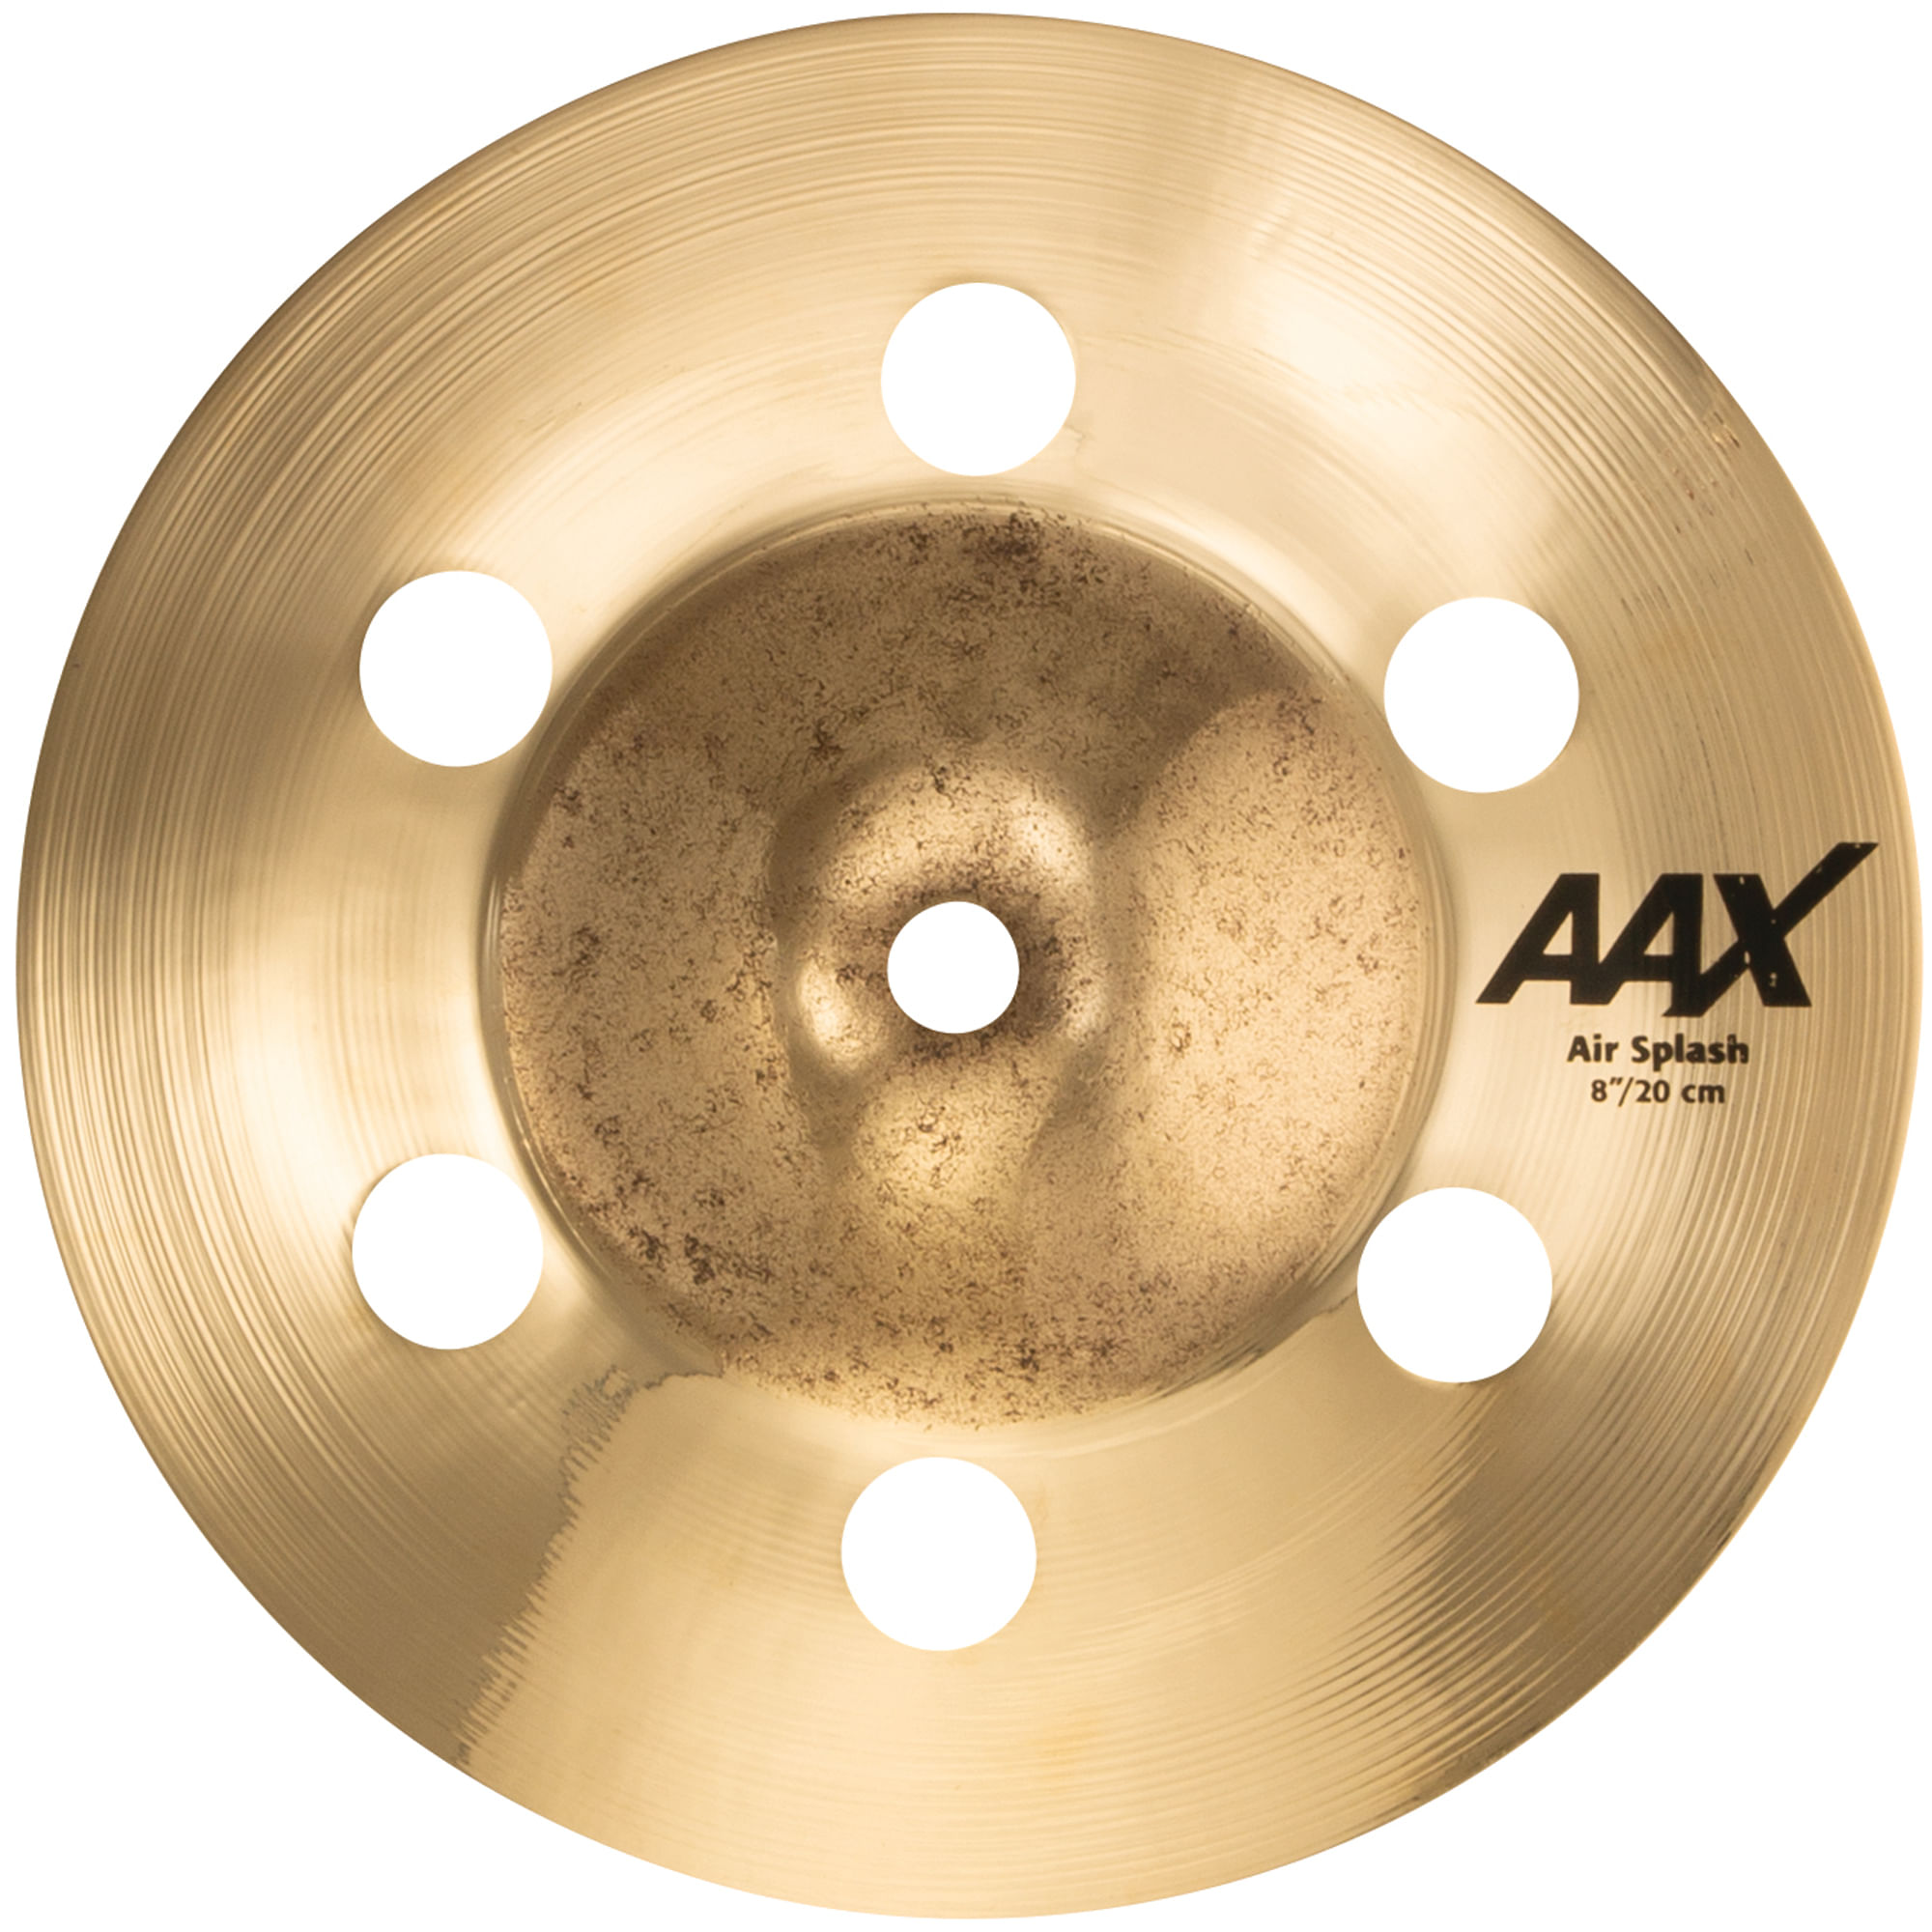 Sabian AAX Air Splash Cymbal - 8